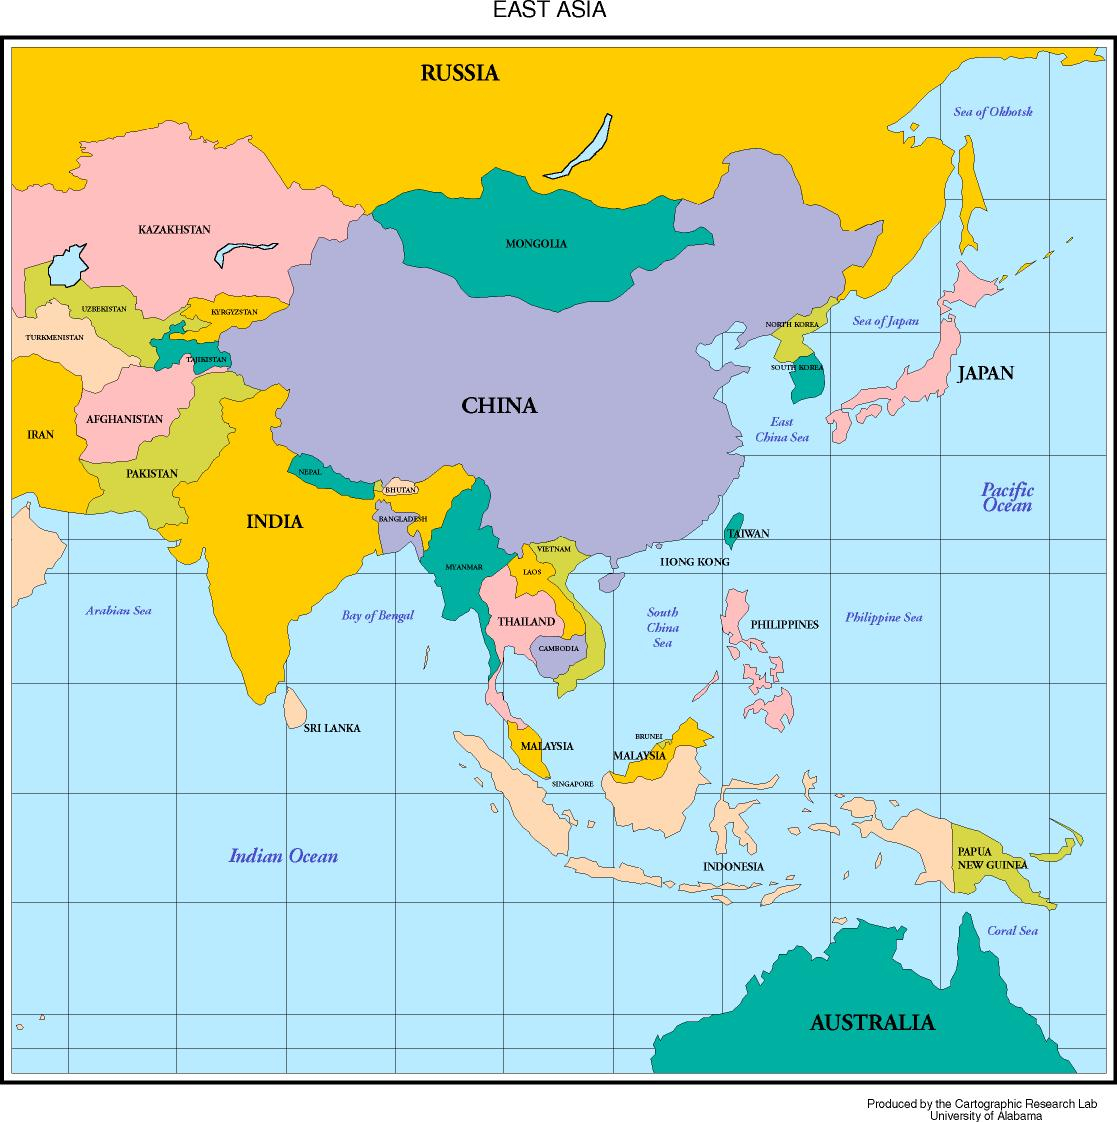 Asia asia cos. Географическая карта Юго Восточной Азии. Политическая карта зарубежной Азии Гонконг. Карта Юго-Восточной Азии и Китая. Карта Южной Азии со странами крупно.